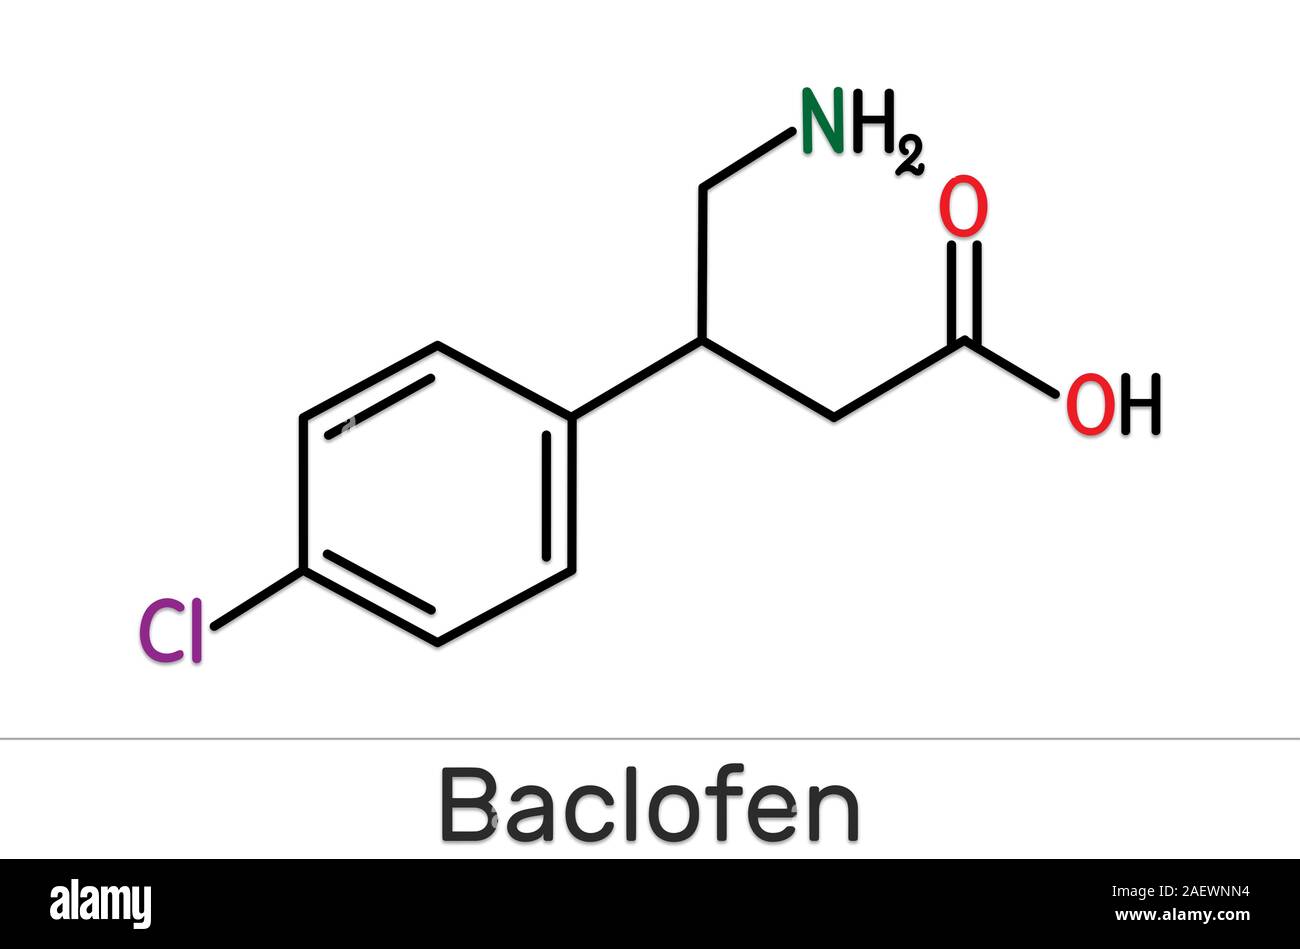 Baclofen Molekül C10H12ClNO2, ist ein Medikament, das zur Behandlung der Spastik der Muskulatur. Strukturelle chemische Formel. Abbildung: Stockfoto